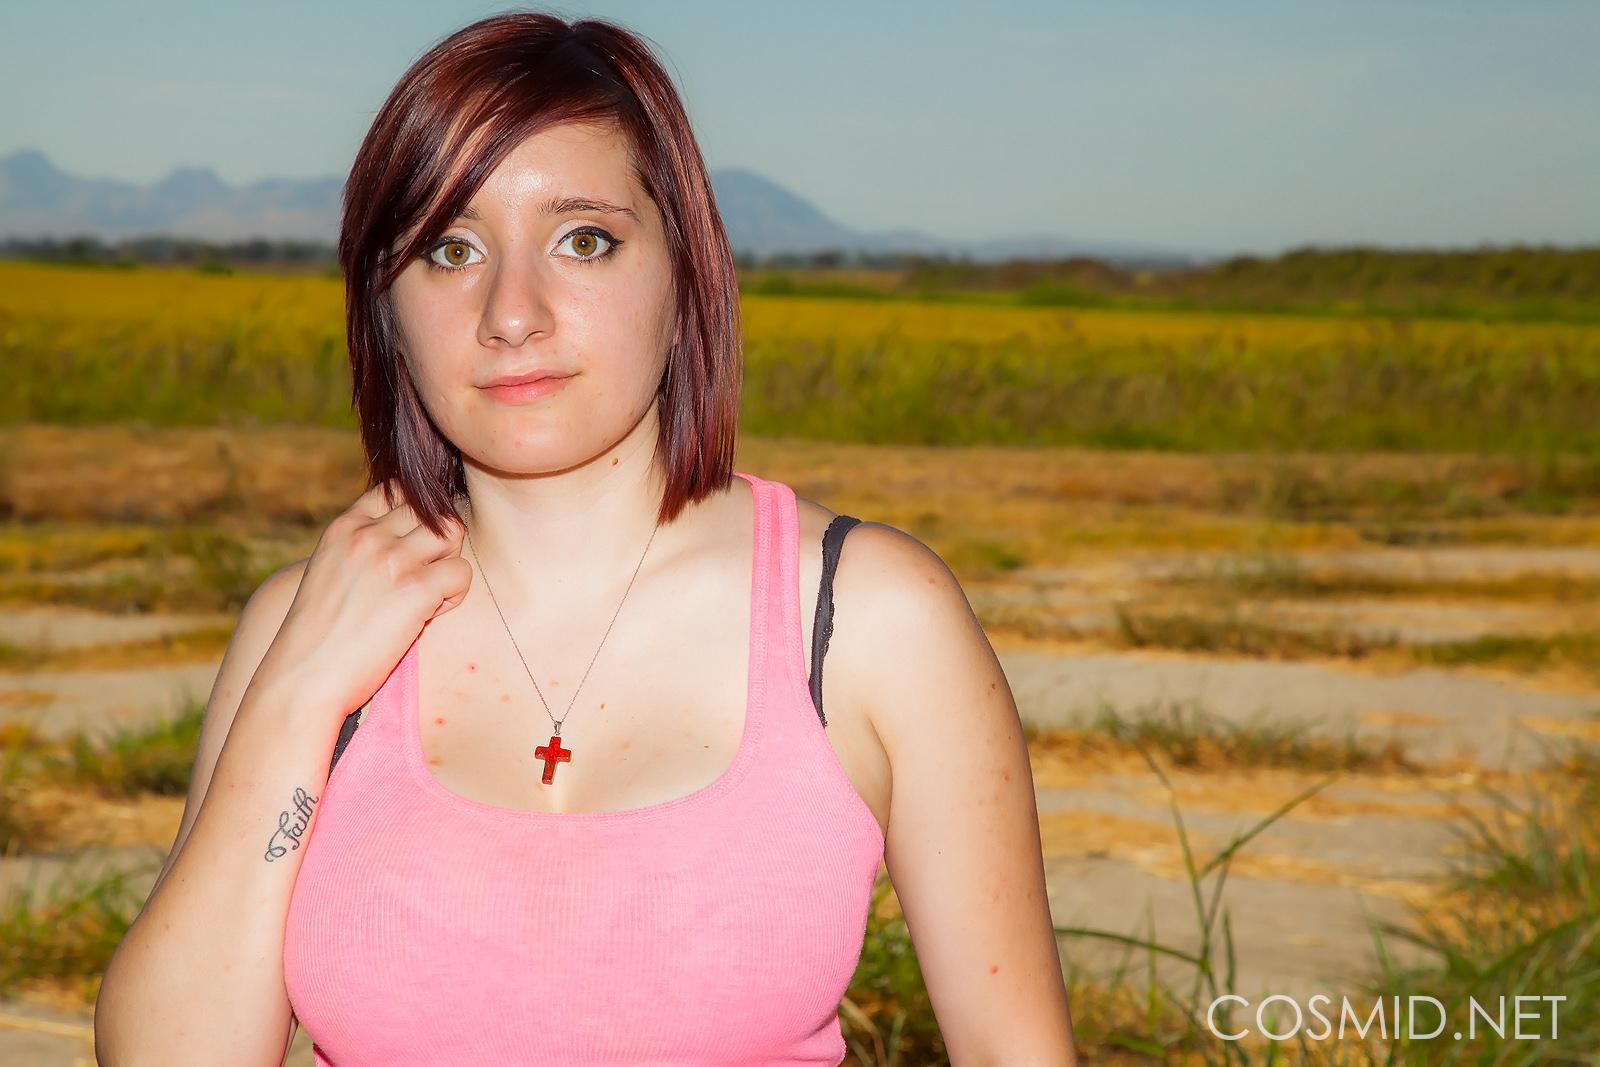 Chelsea bell, ragazza dai capelli rossi, si spoglia fuori nel suo primo set fotografico
 #53765500